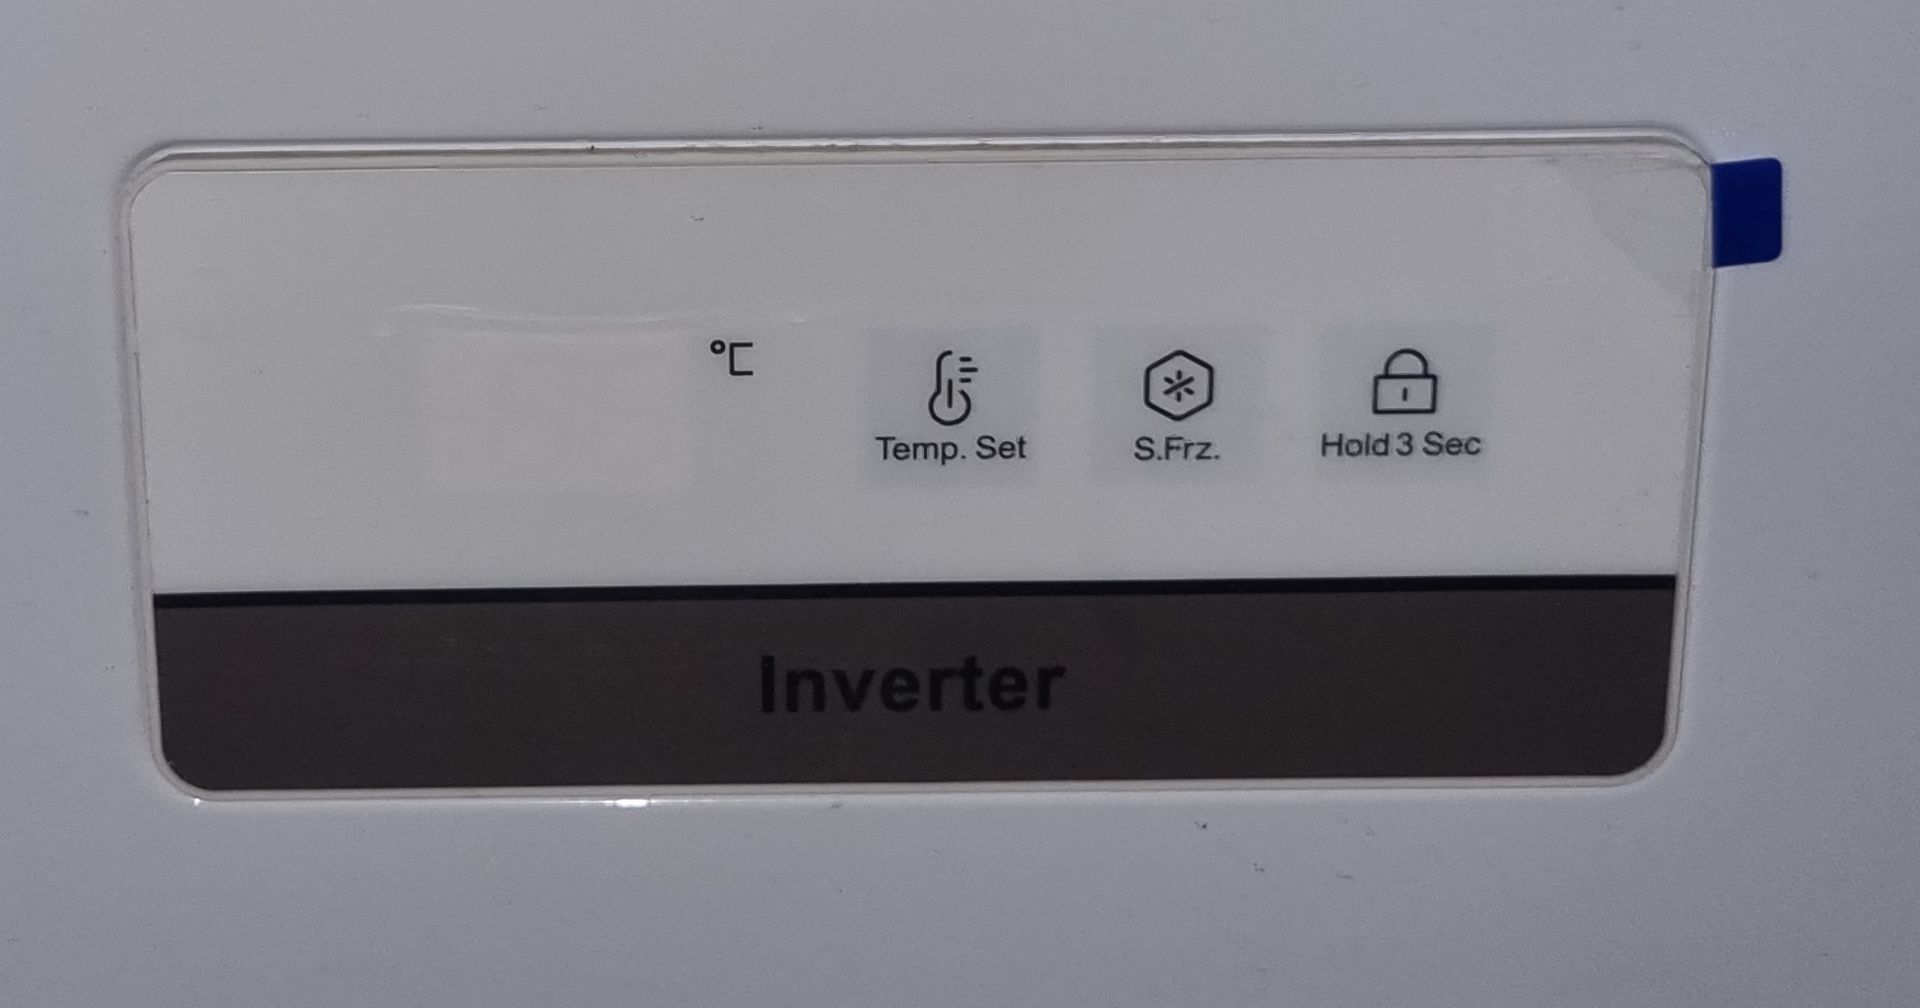 Haier HCE429F Chest Freezer - Net Vol. 413 litres, Freeze Cap. 28kg - 140x65x85cm - Image 2 of 4